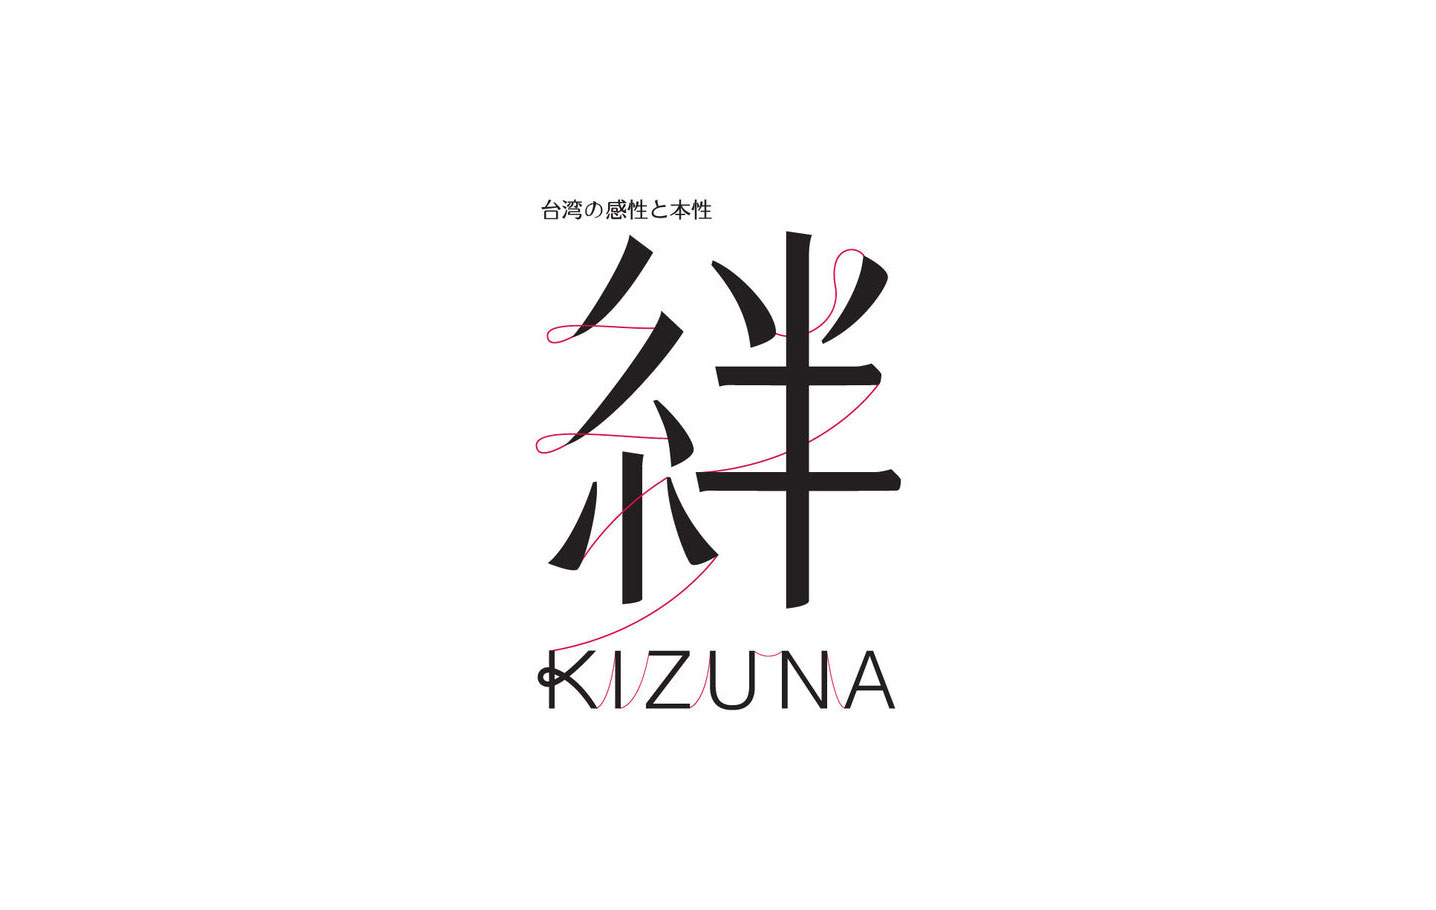 绊 Kizuna 茑屋书店台湾主题展logo